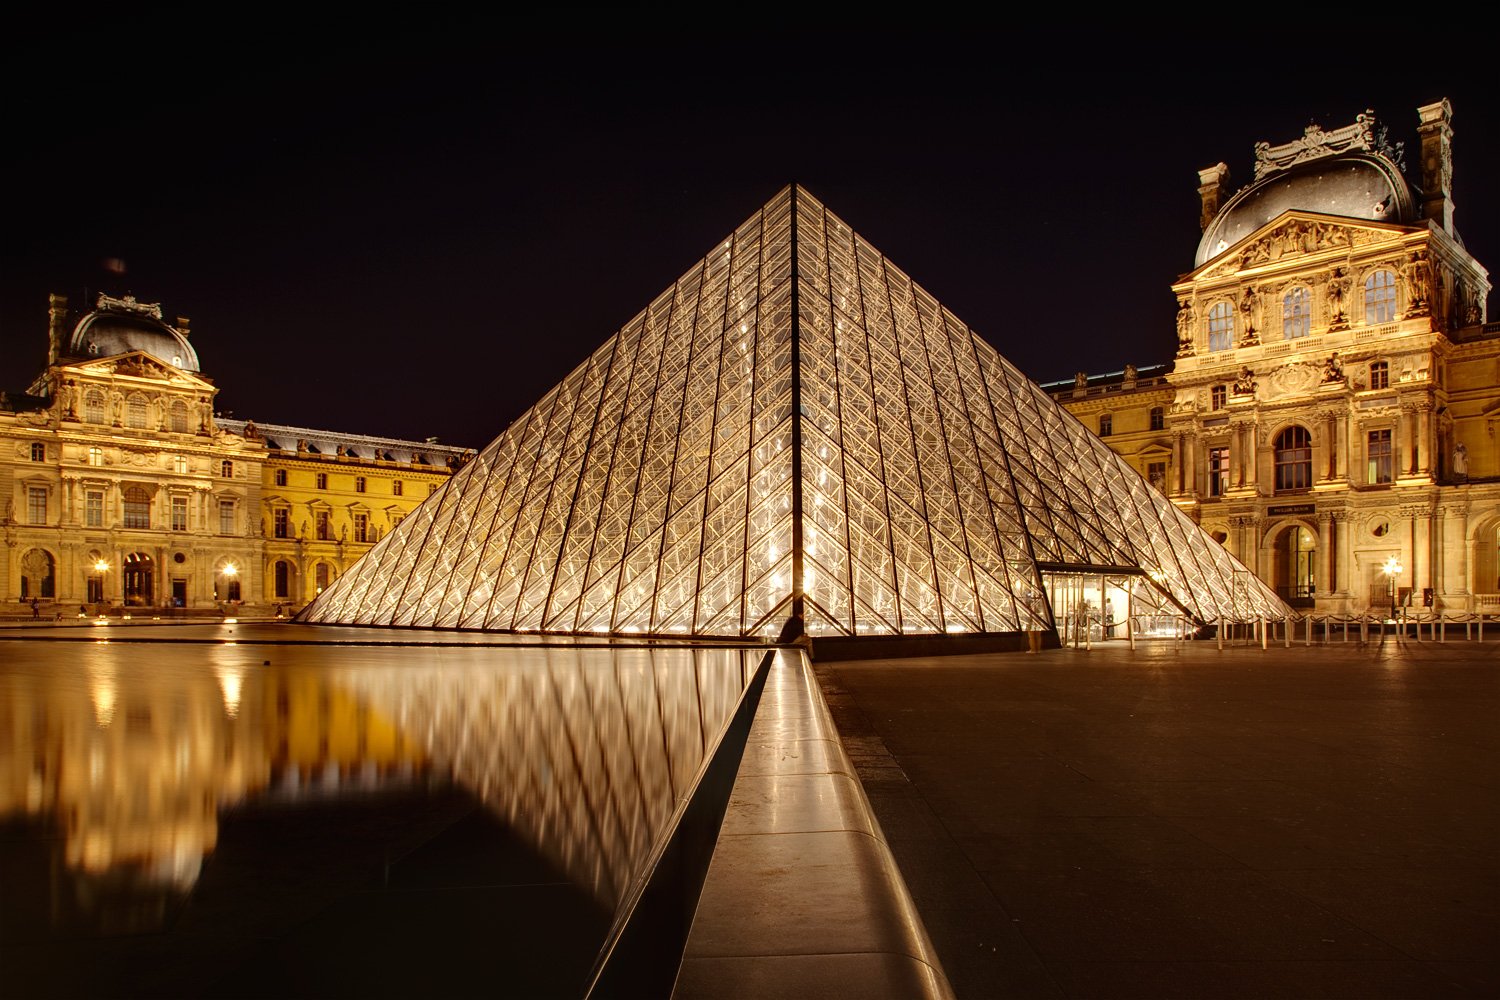 Paris-Pyramide du Louvre-Tuileries-Palais Royal-Normandy Hotel Paris